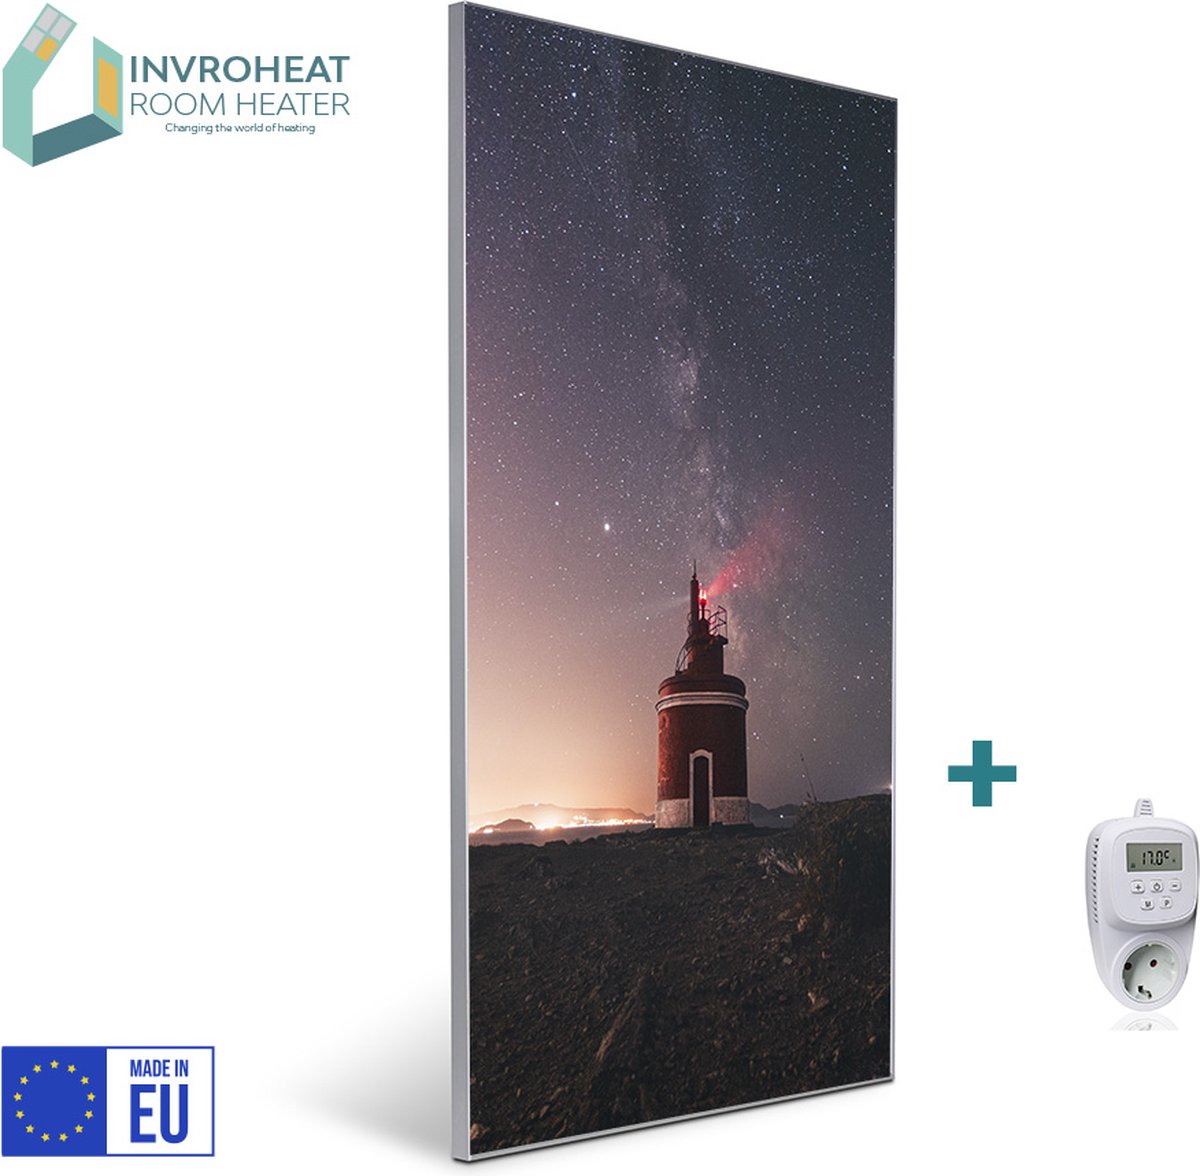 Invroheat infrarood verwarmingspaneel Lighthouse - 800W - 61x91.5cm - Duurzaam, zeer energie efficiënt en warmt snel op - afbeelding verwisselbaar - met thermostaat